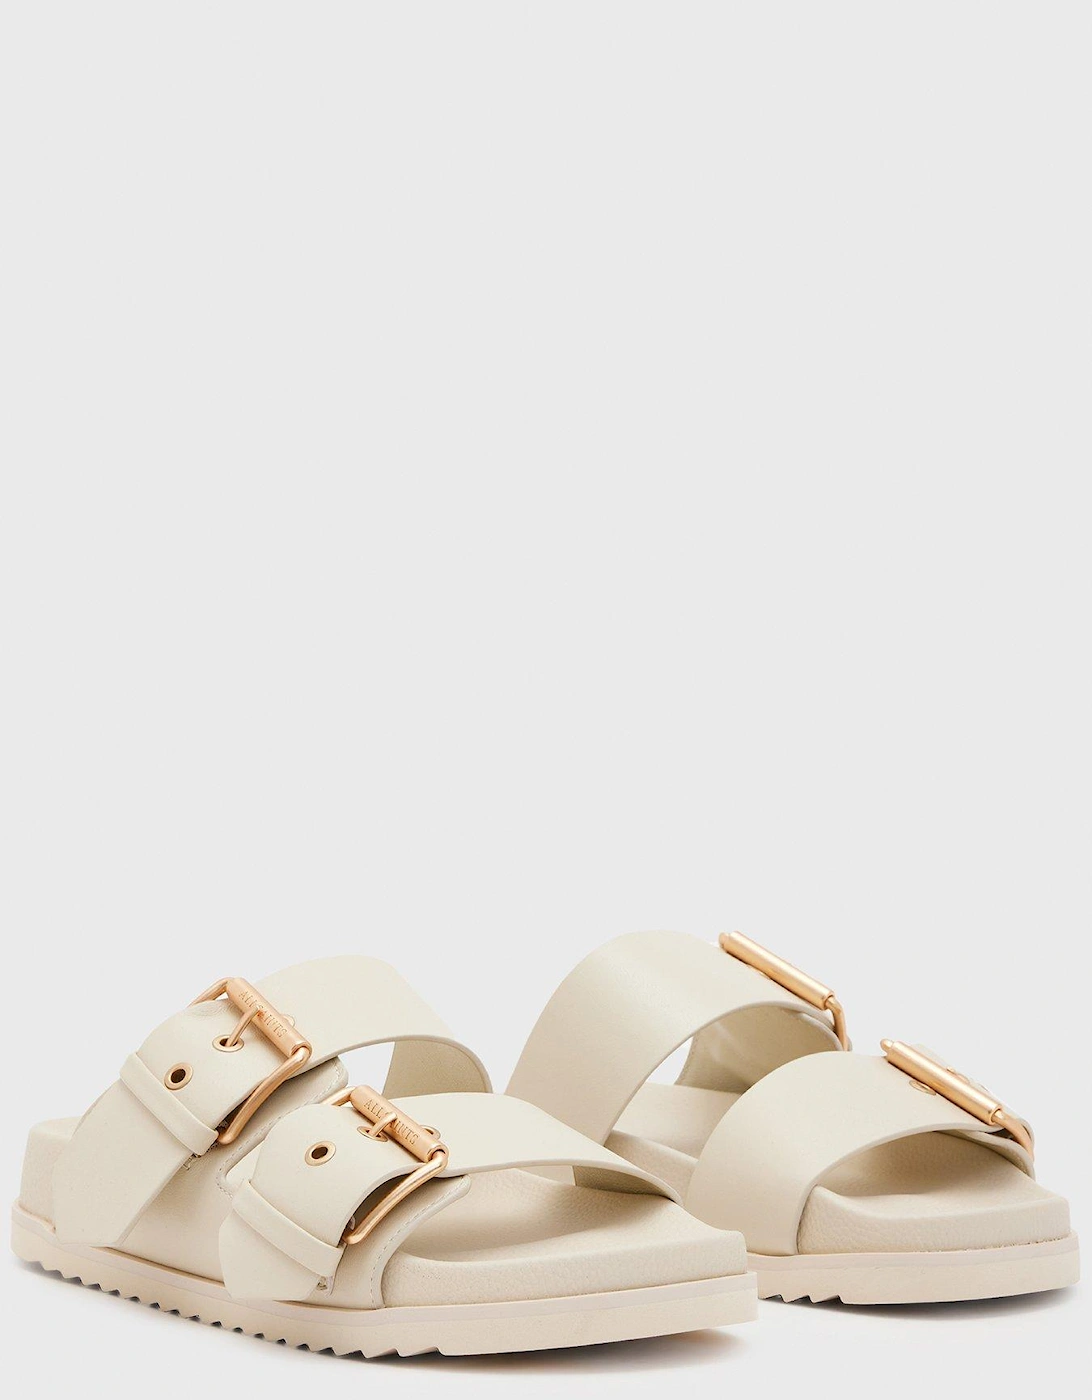 Sian Sandals - White